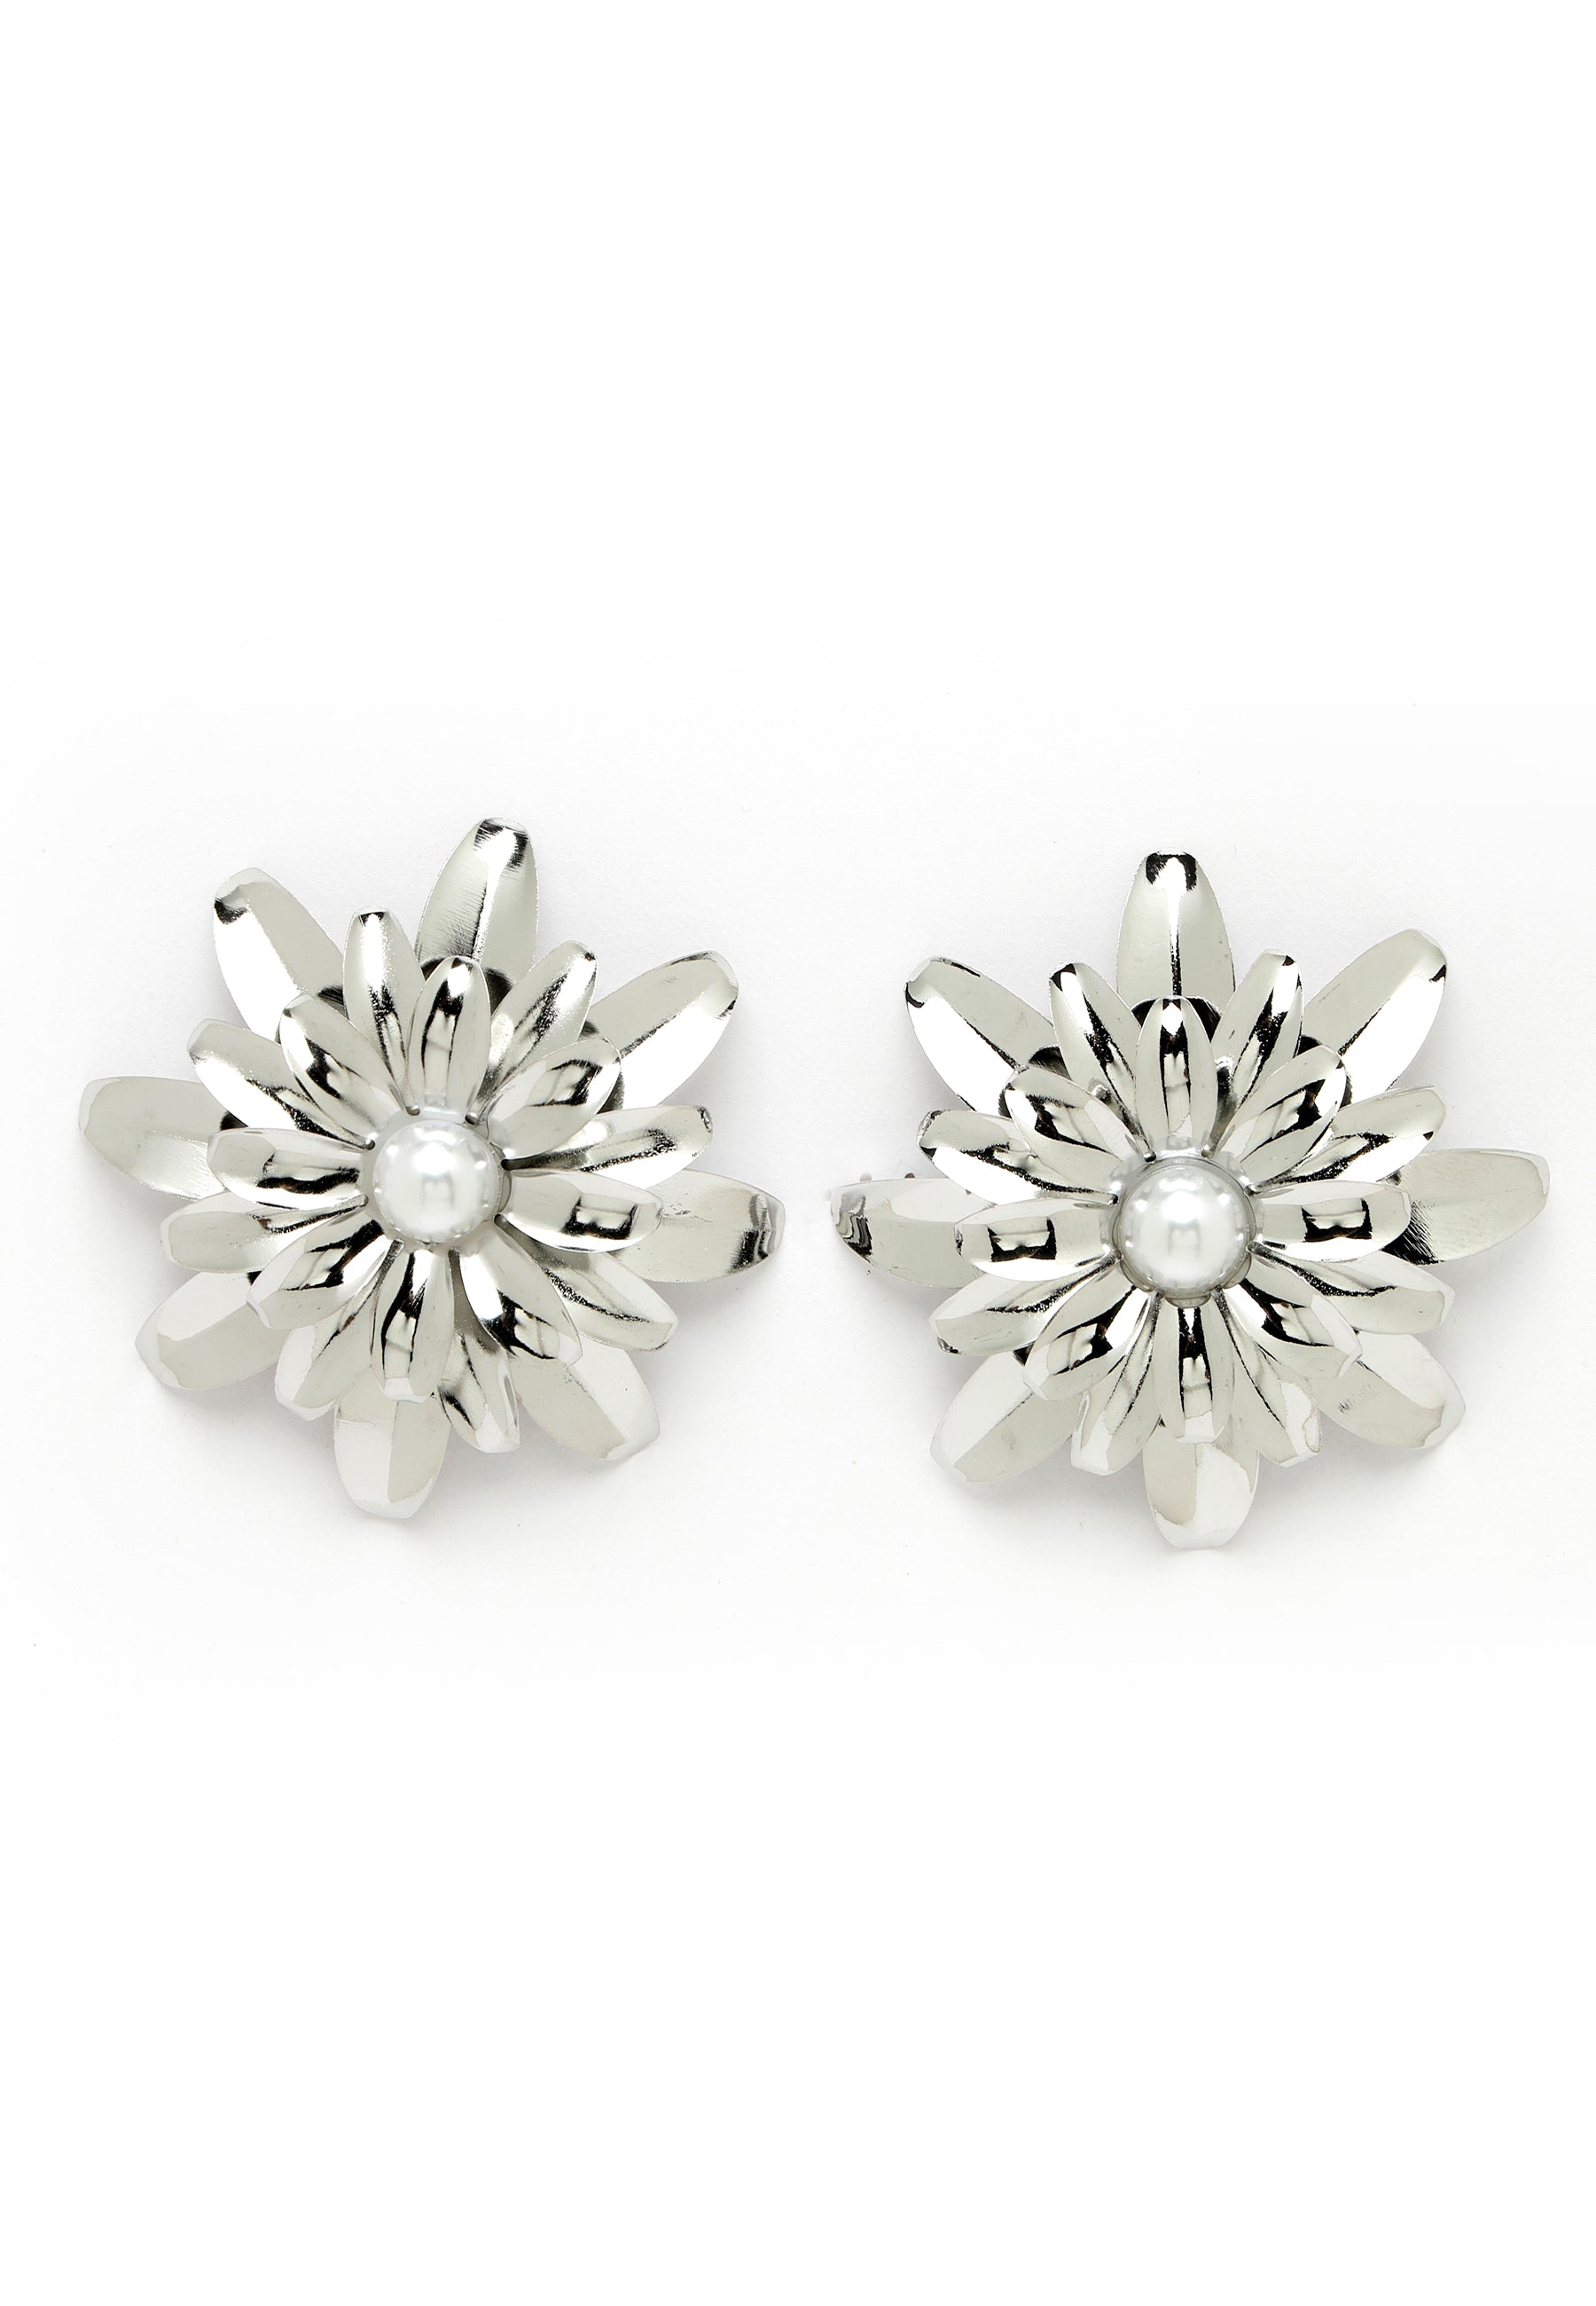 Avant-Garde Paris Silver-Colored Floral Stud Earrings